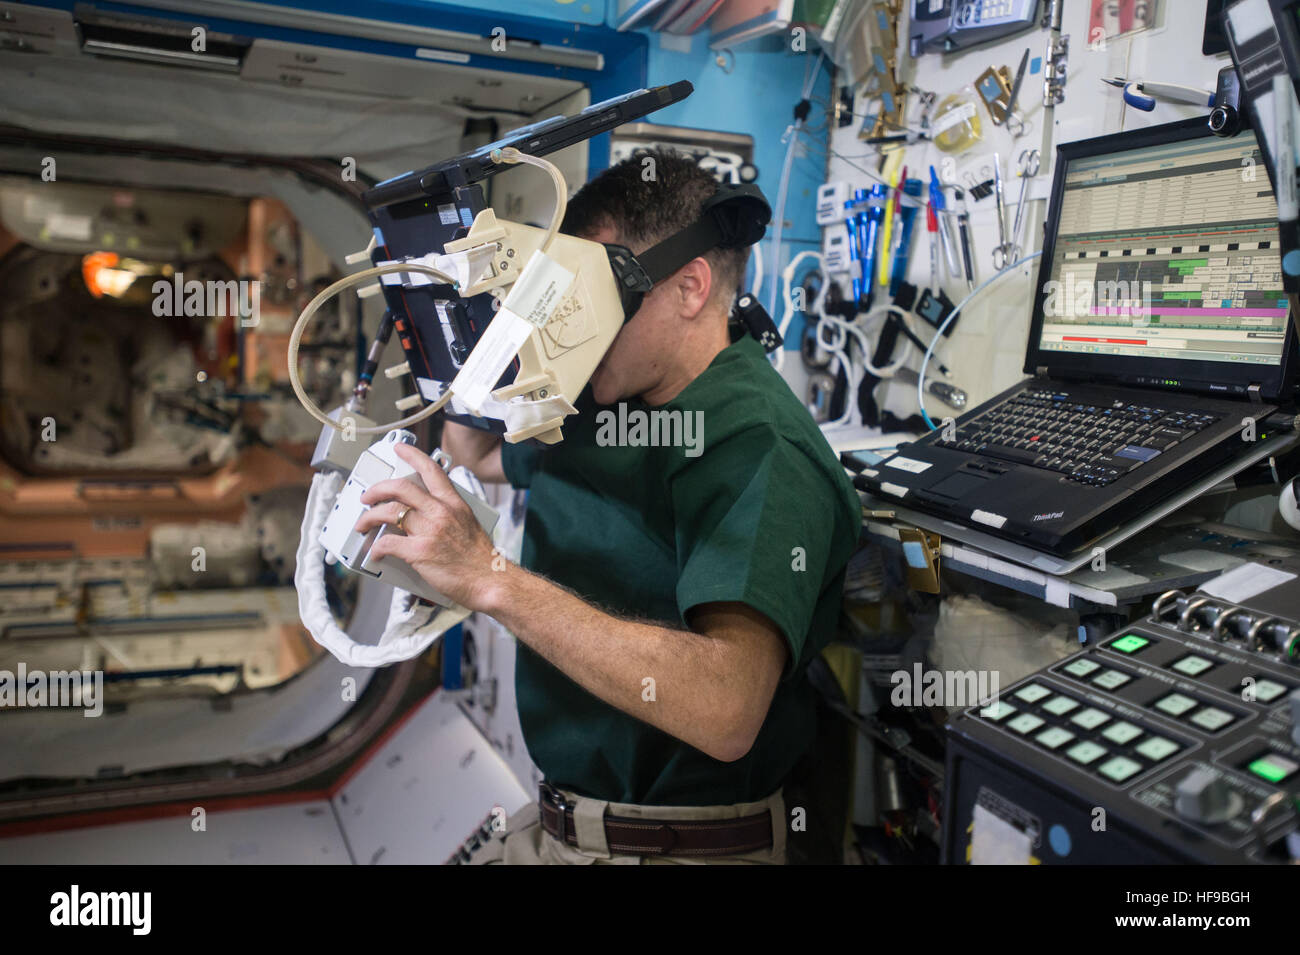 NASA-Expedition nutzt 49-50 erstklassige Crew Mitglied Astronaut Shane Kimbrough ein virtual-Reality-Kopfhörer für kommende Außenbordeinsätze an Bord der internationalen Raumstation ISS 12. Dezember 2016 in der Erdumlaufbahn zu trainieren. Stockfoto